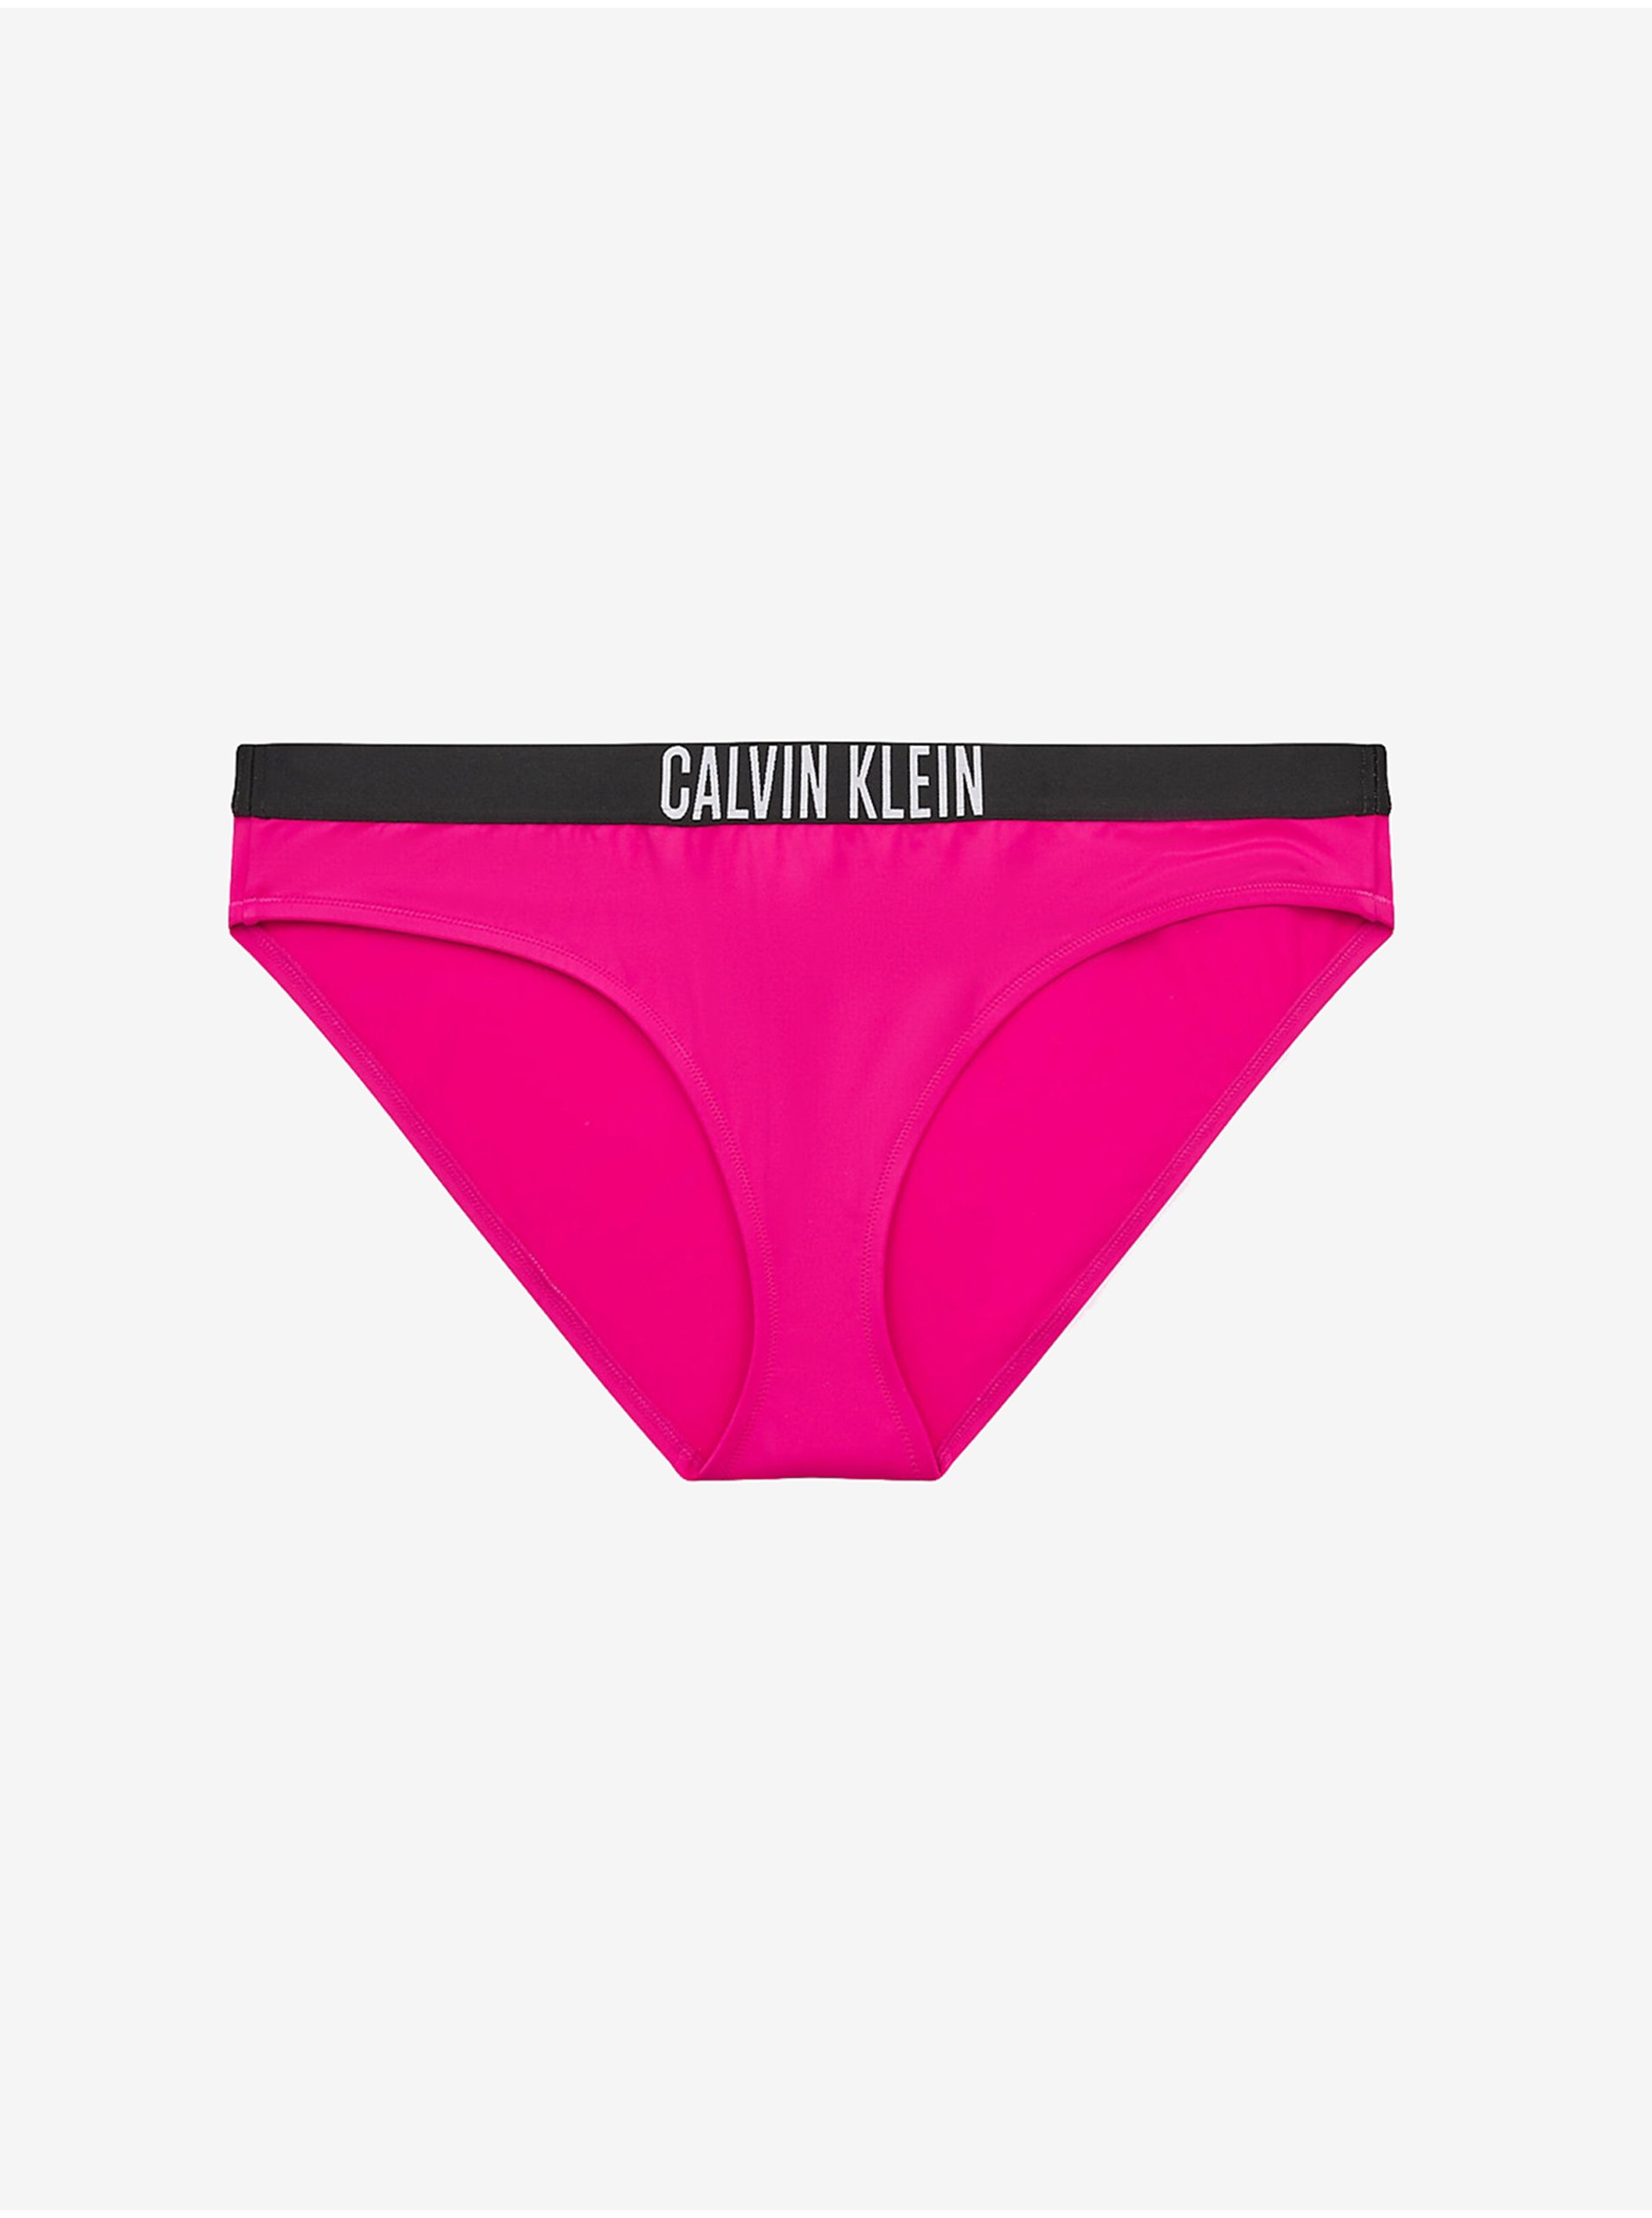 E-shop Tmavě růžový dámský spodní díl plavek Calvin Klein Underwear